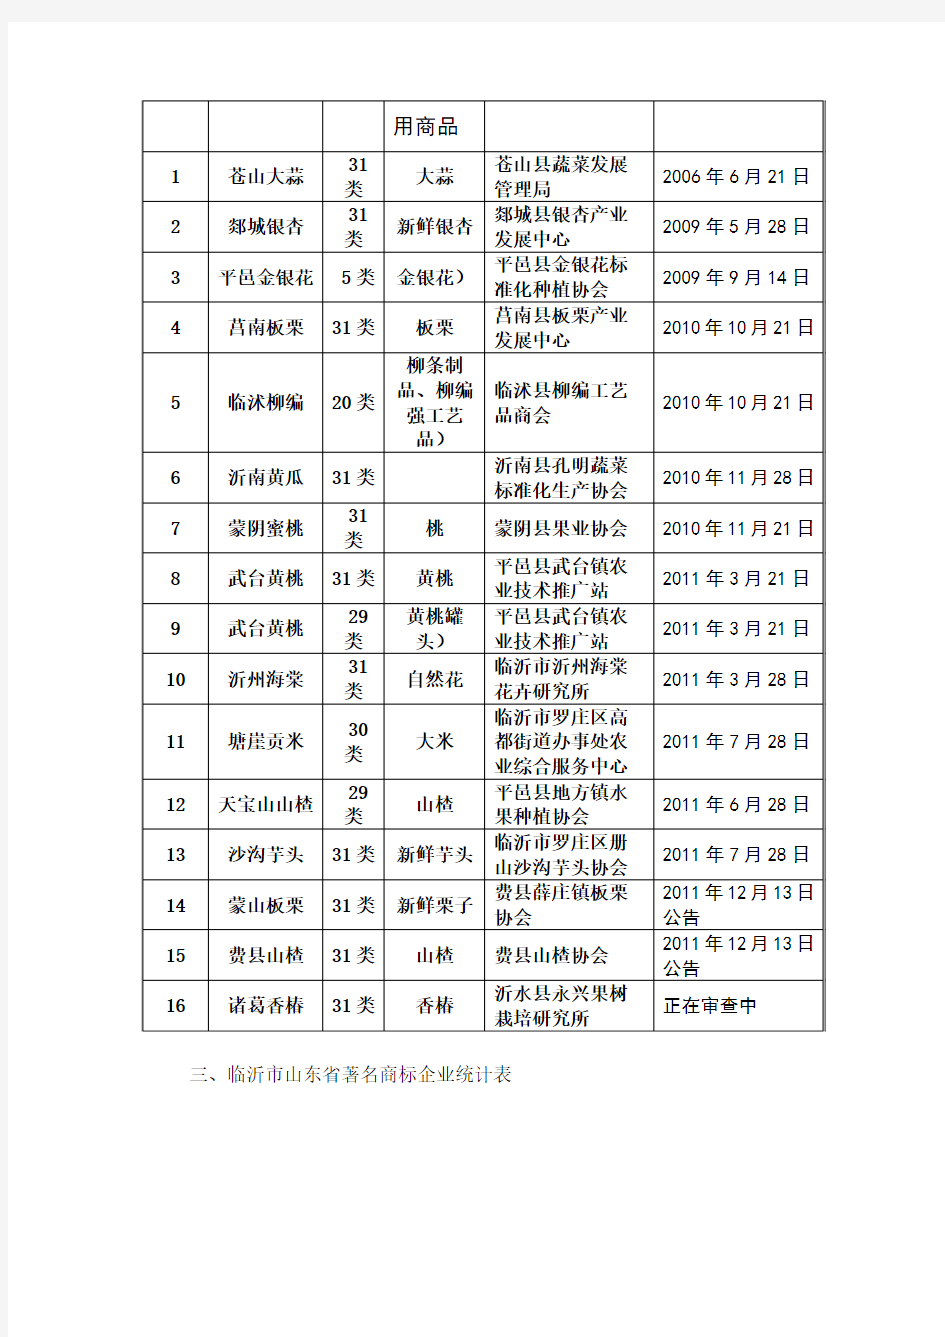 临沂市中国驰名商标企业统计表